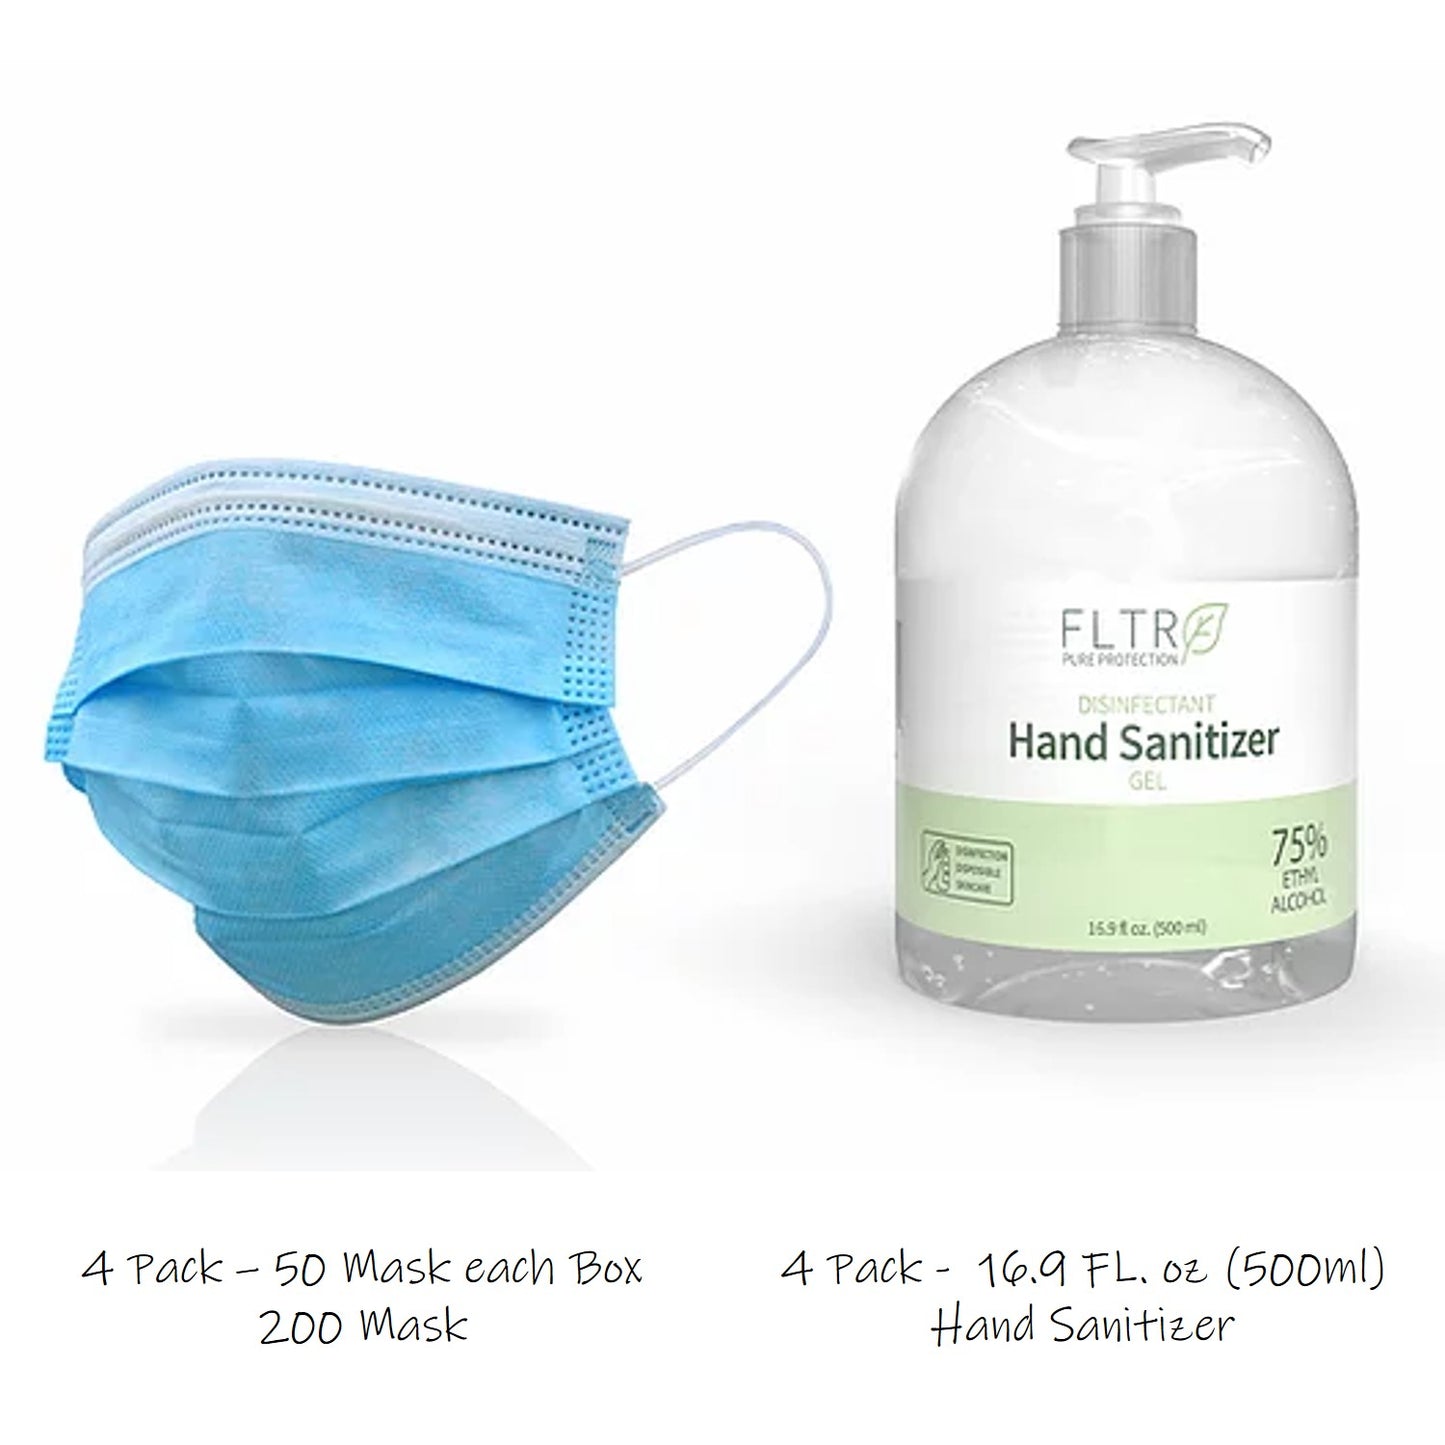 FLTR Essentials Pack 200 Mask + 4 Bottle Hand Sanitizer FDA registered